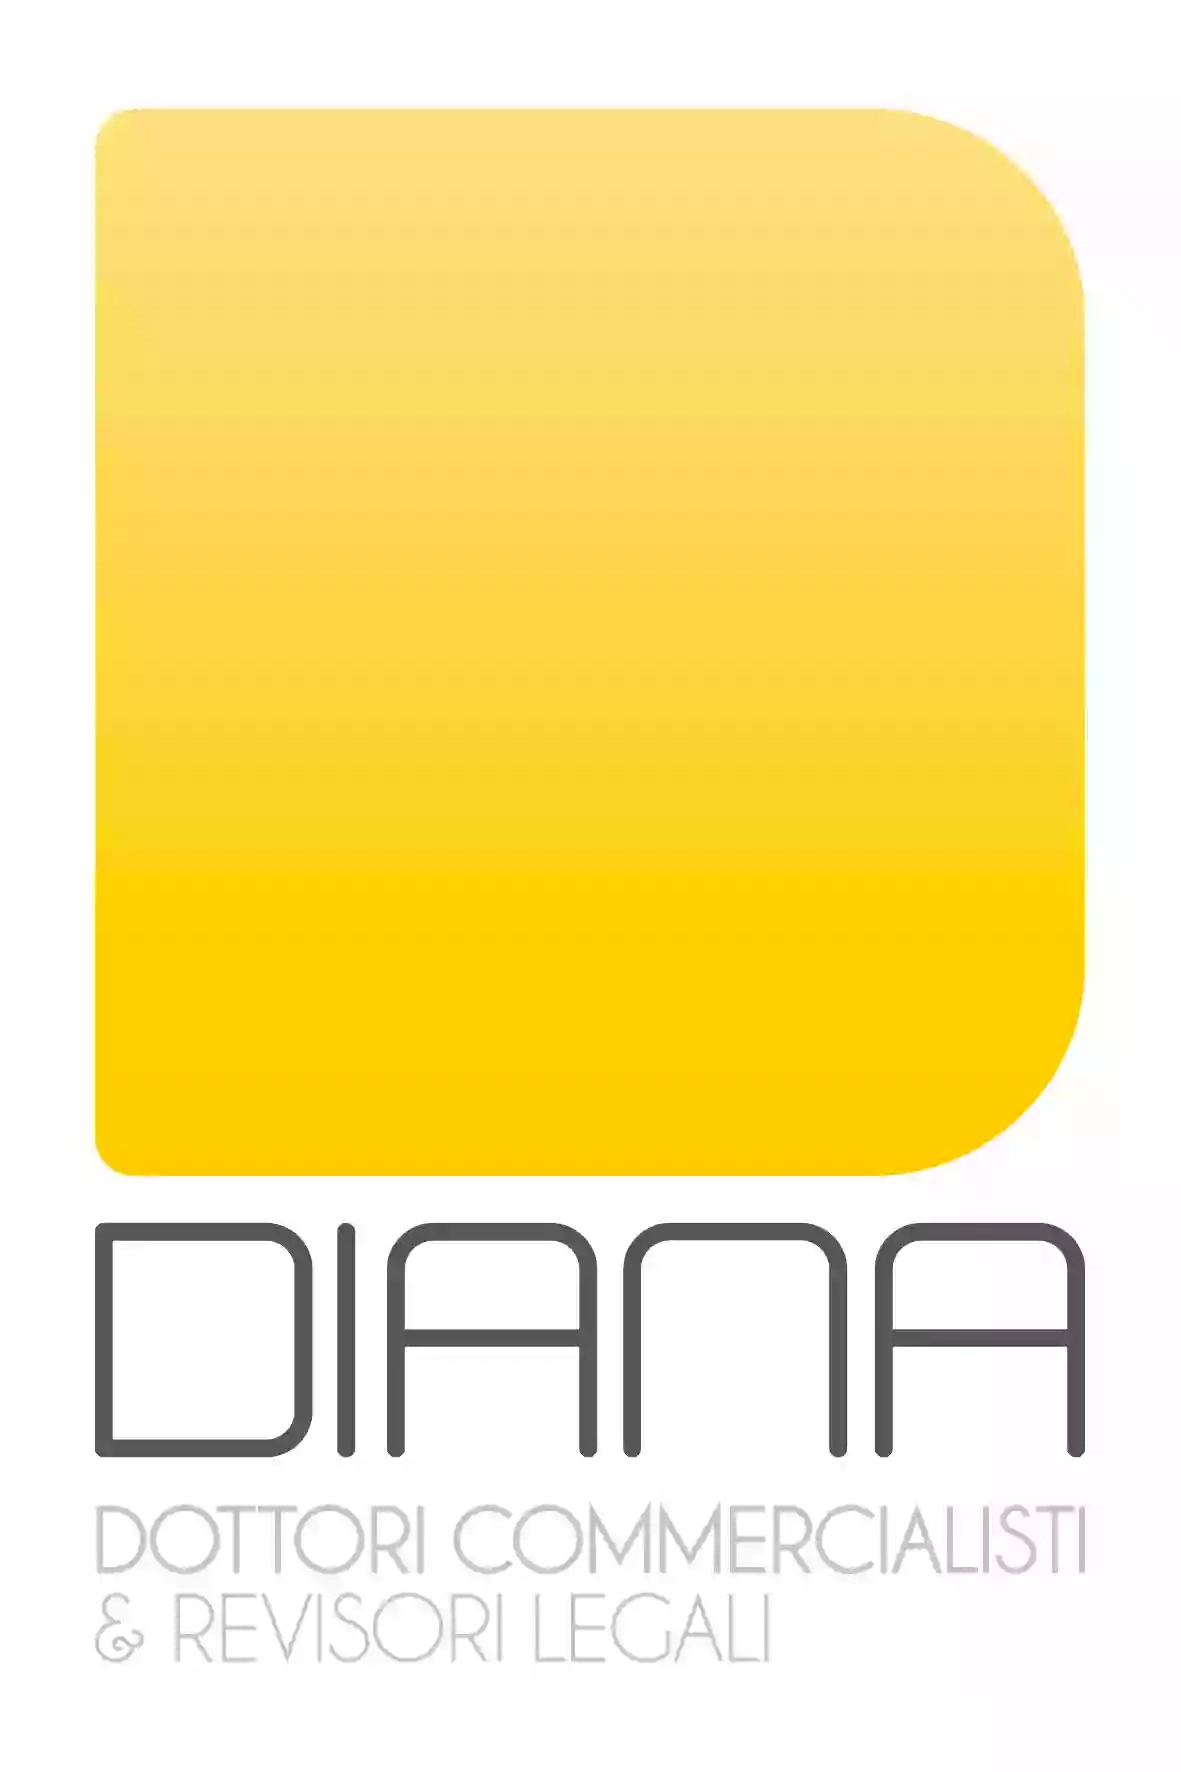 Studio Diana - Dottori Commercialisti, Revisori Legali e Curatori Fallimentari